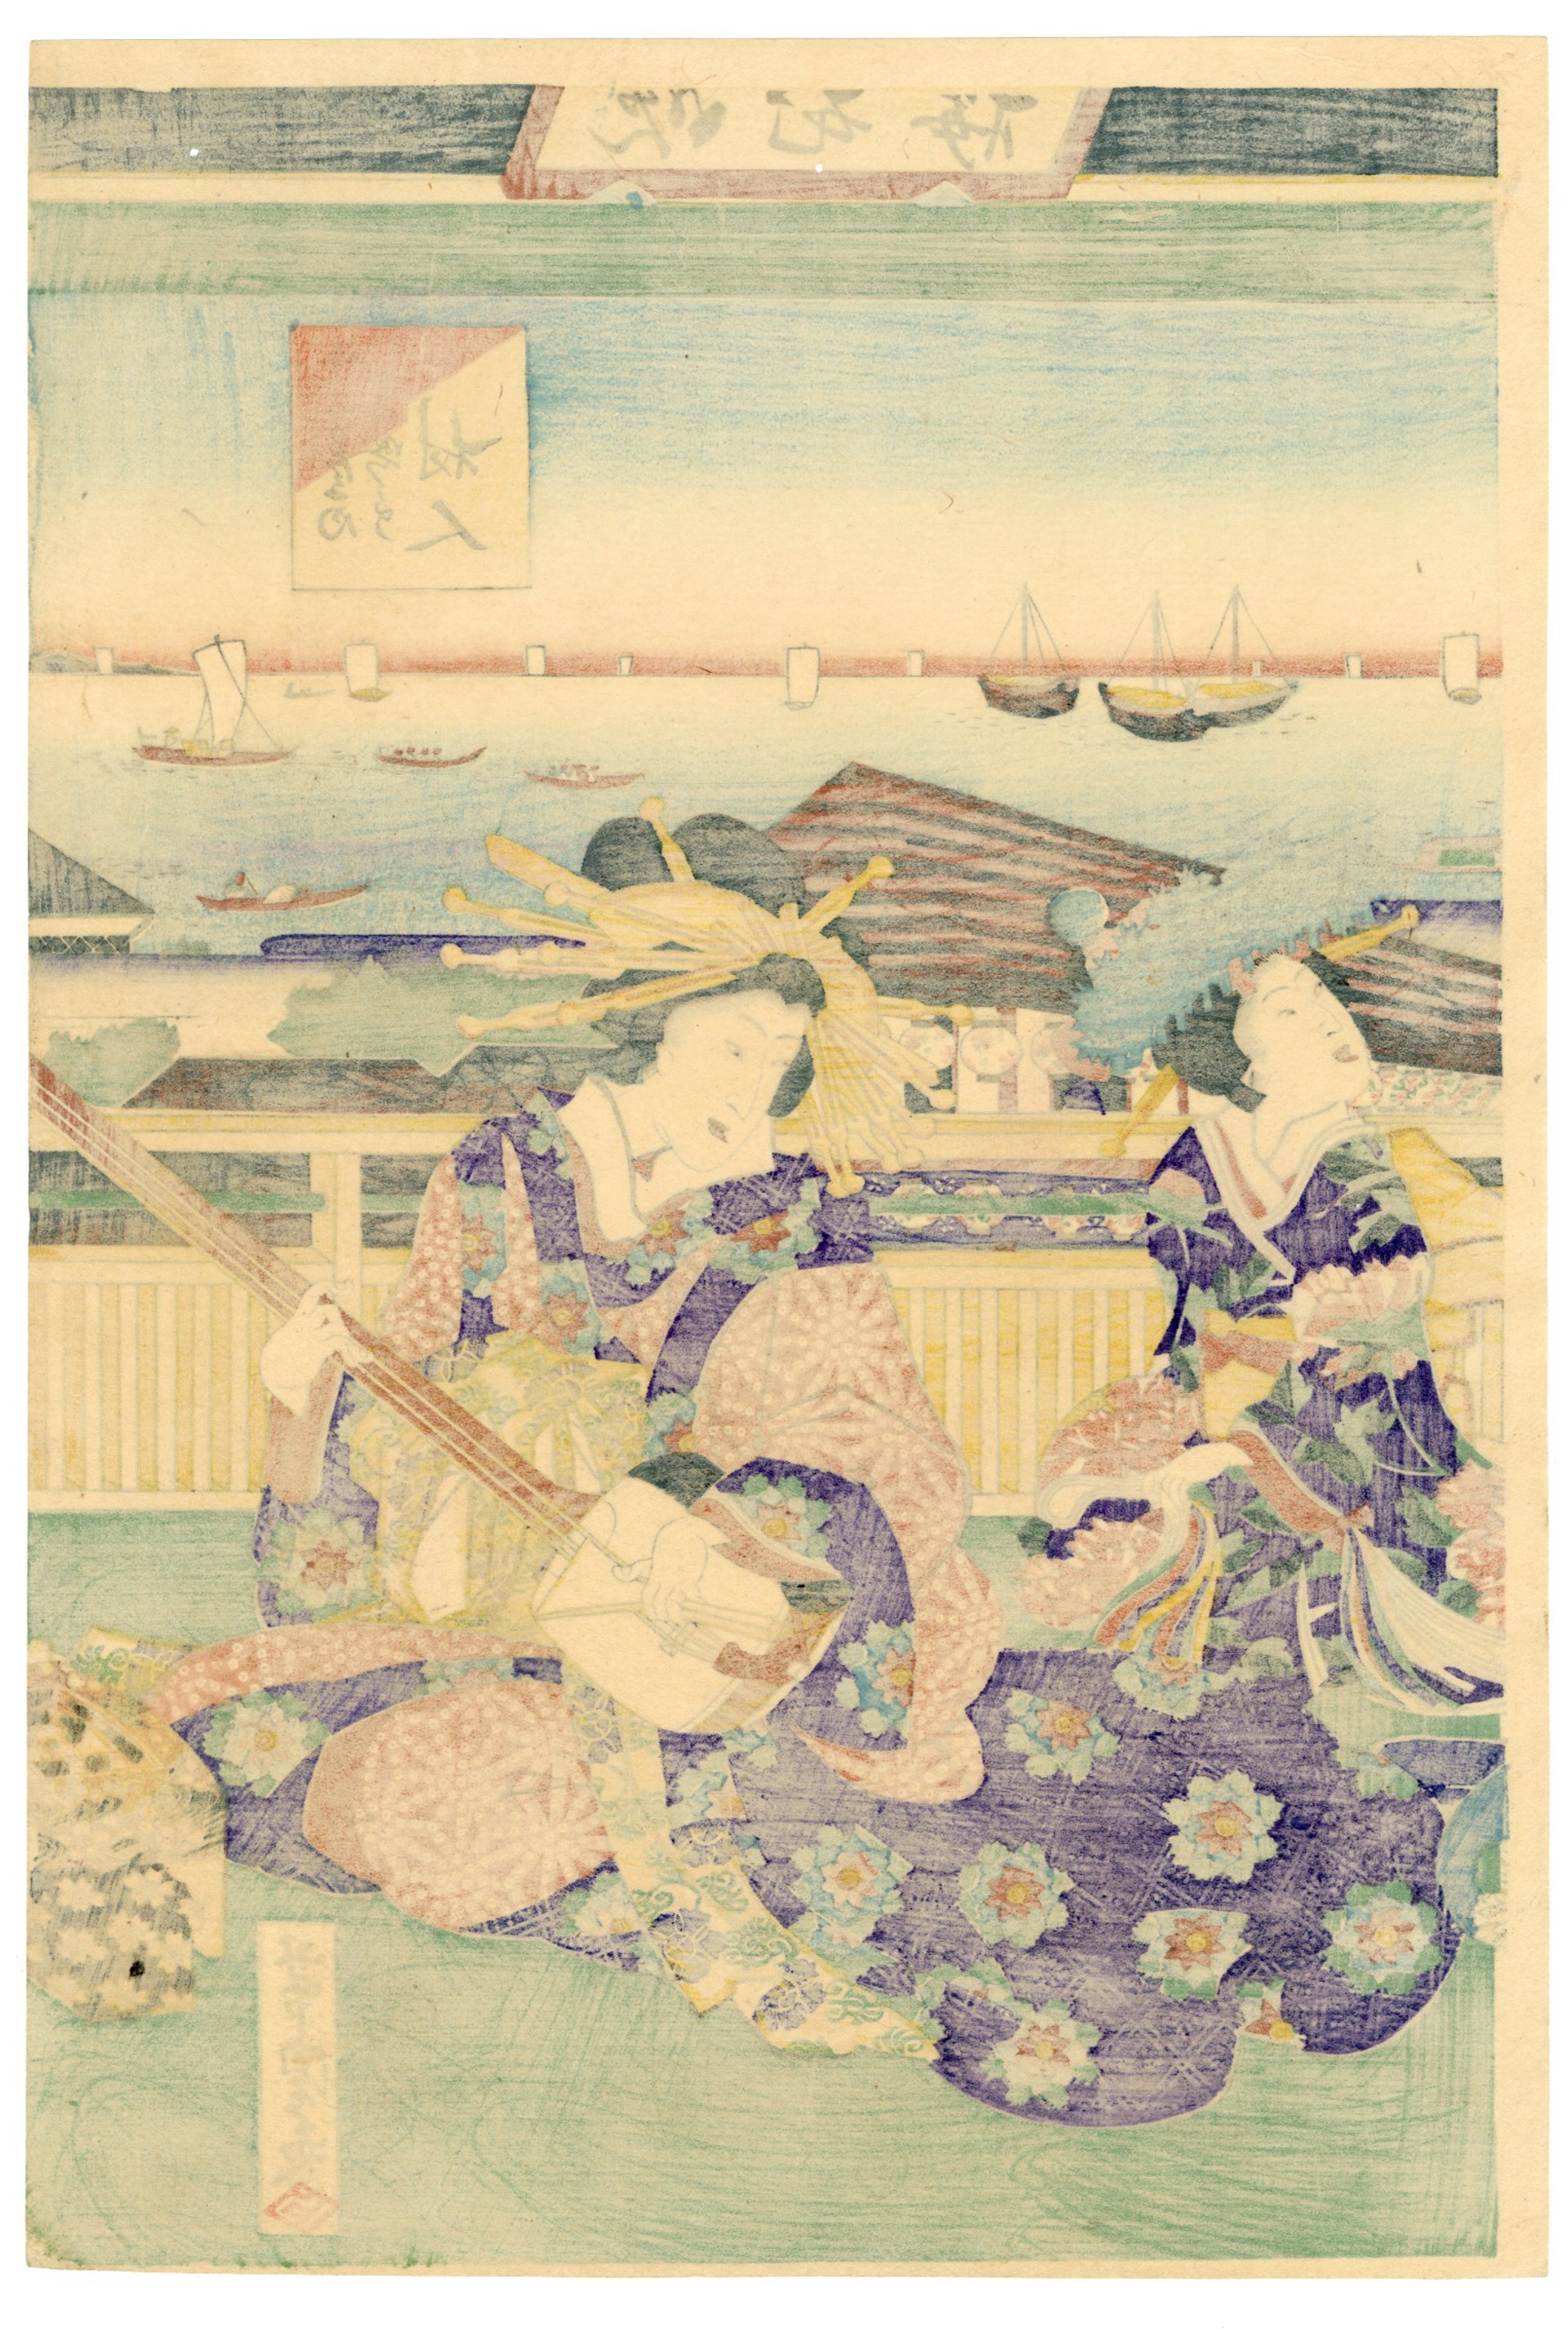 Sankyoku Trio of Noted Courtesans by Yoshitora and Hiroshige III